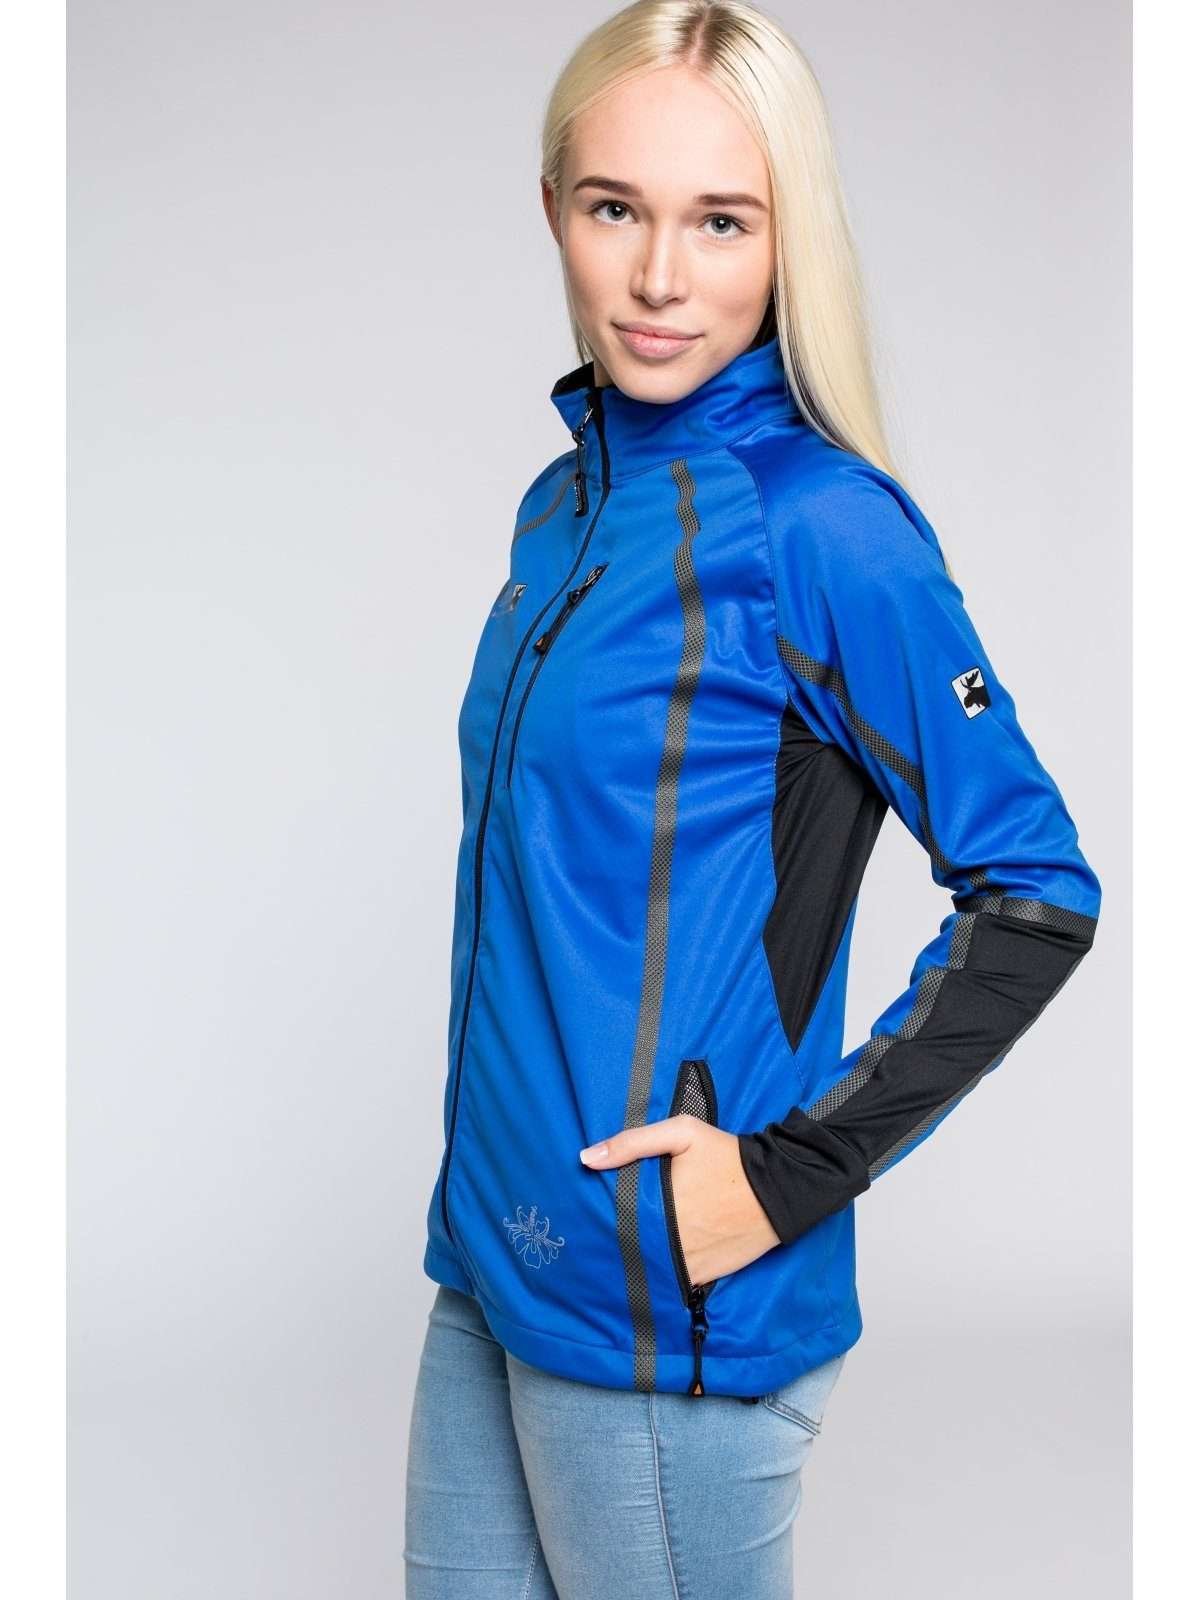 Женская куртка из софтшелла среднего слоя THORSBY также доступна в больших размерах.